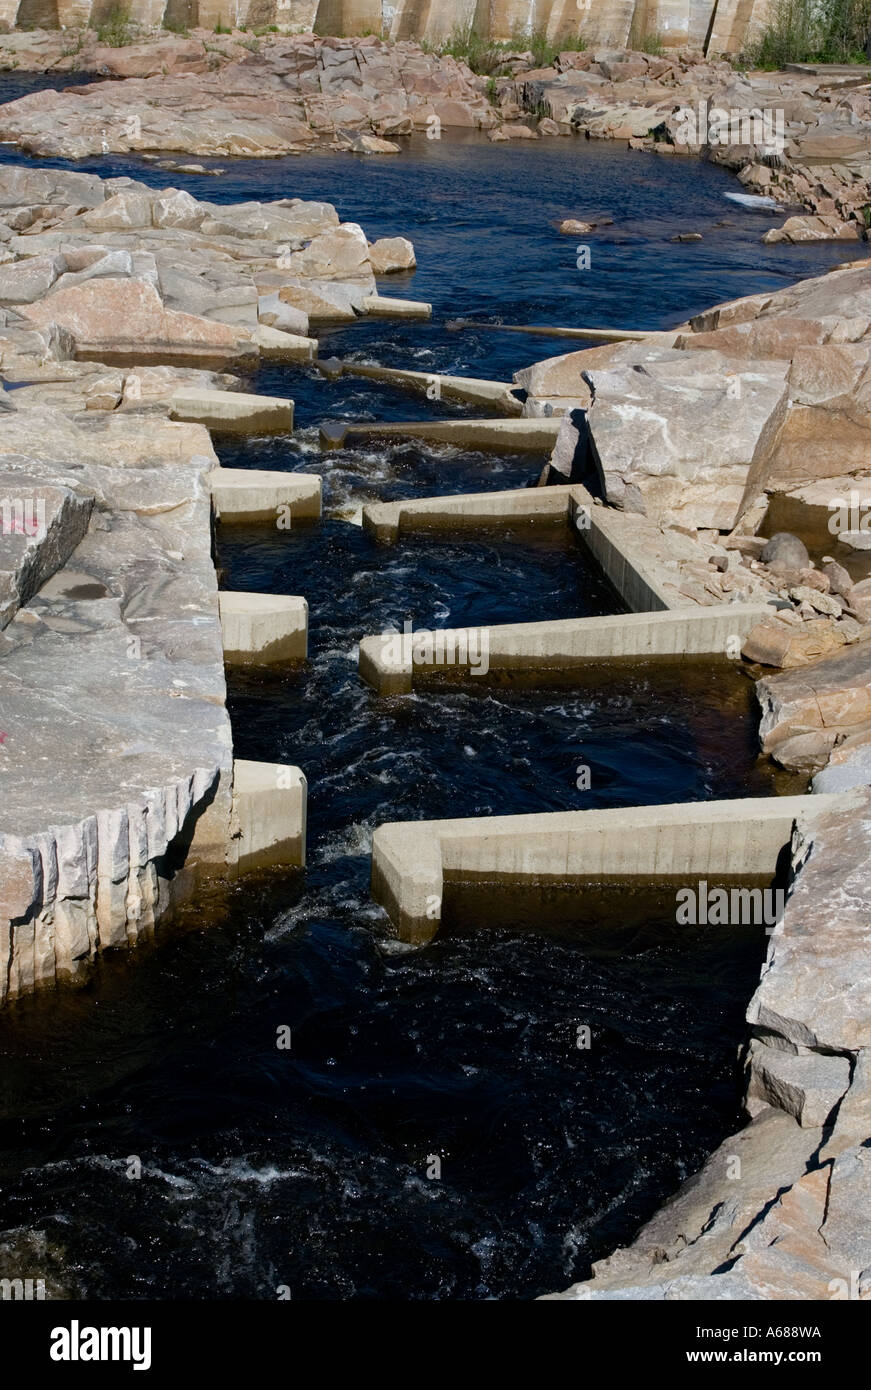 L'échelle artificielle de poissons, qui s'étend sur le soubassement, passe devant le barrage de la centrale d'eau de Merikoski, sur la rivière Oulujoki, en Finlande Banque D'Images